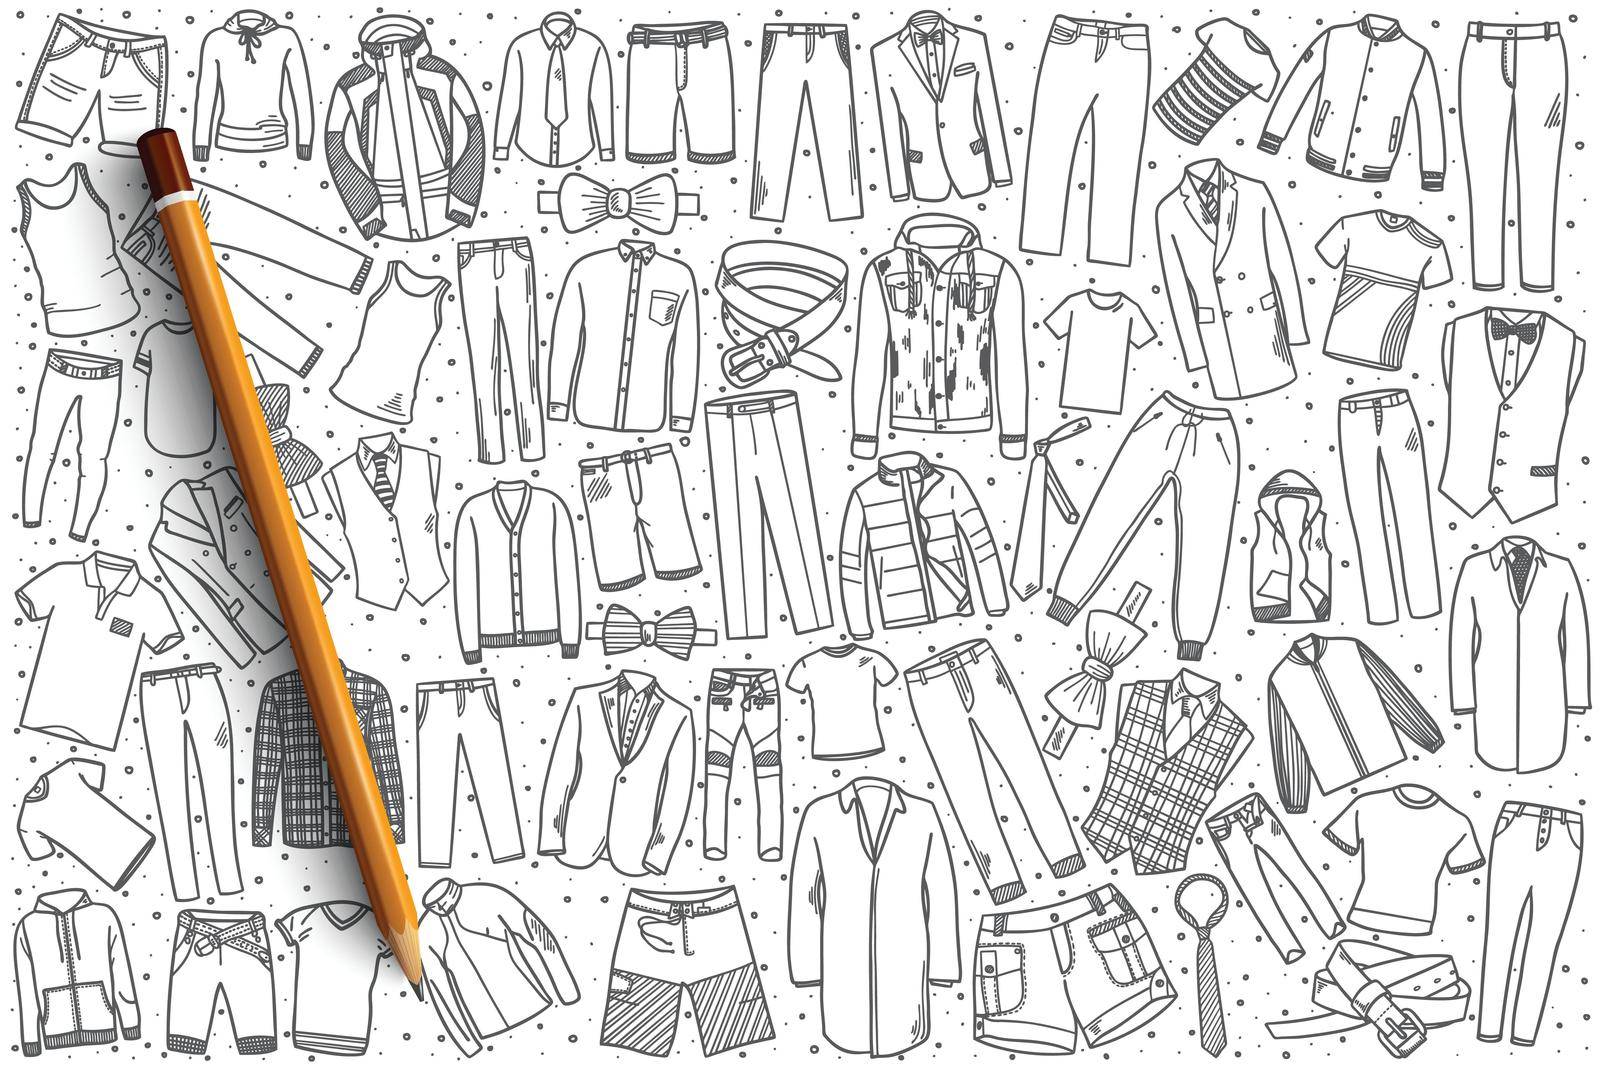 Hand drawn men's clothing set background by Vasilyeva